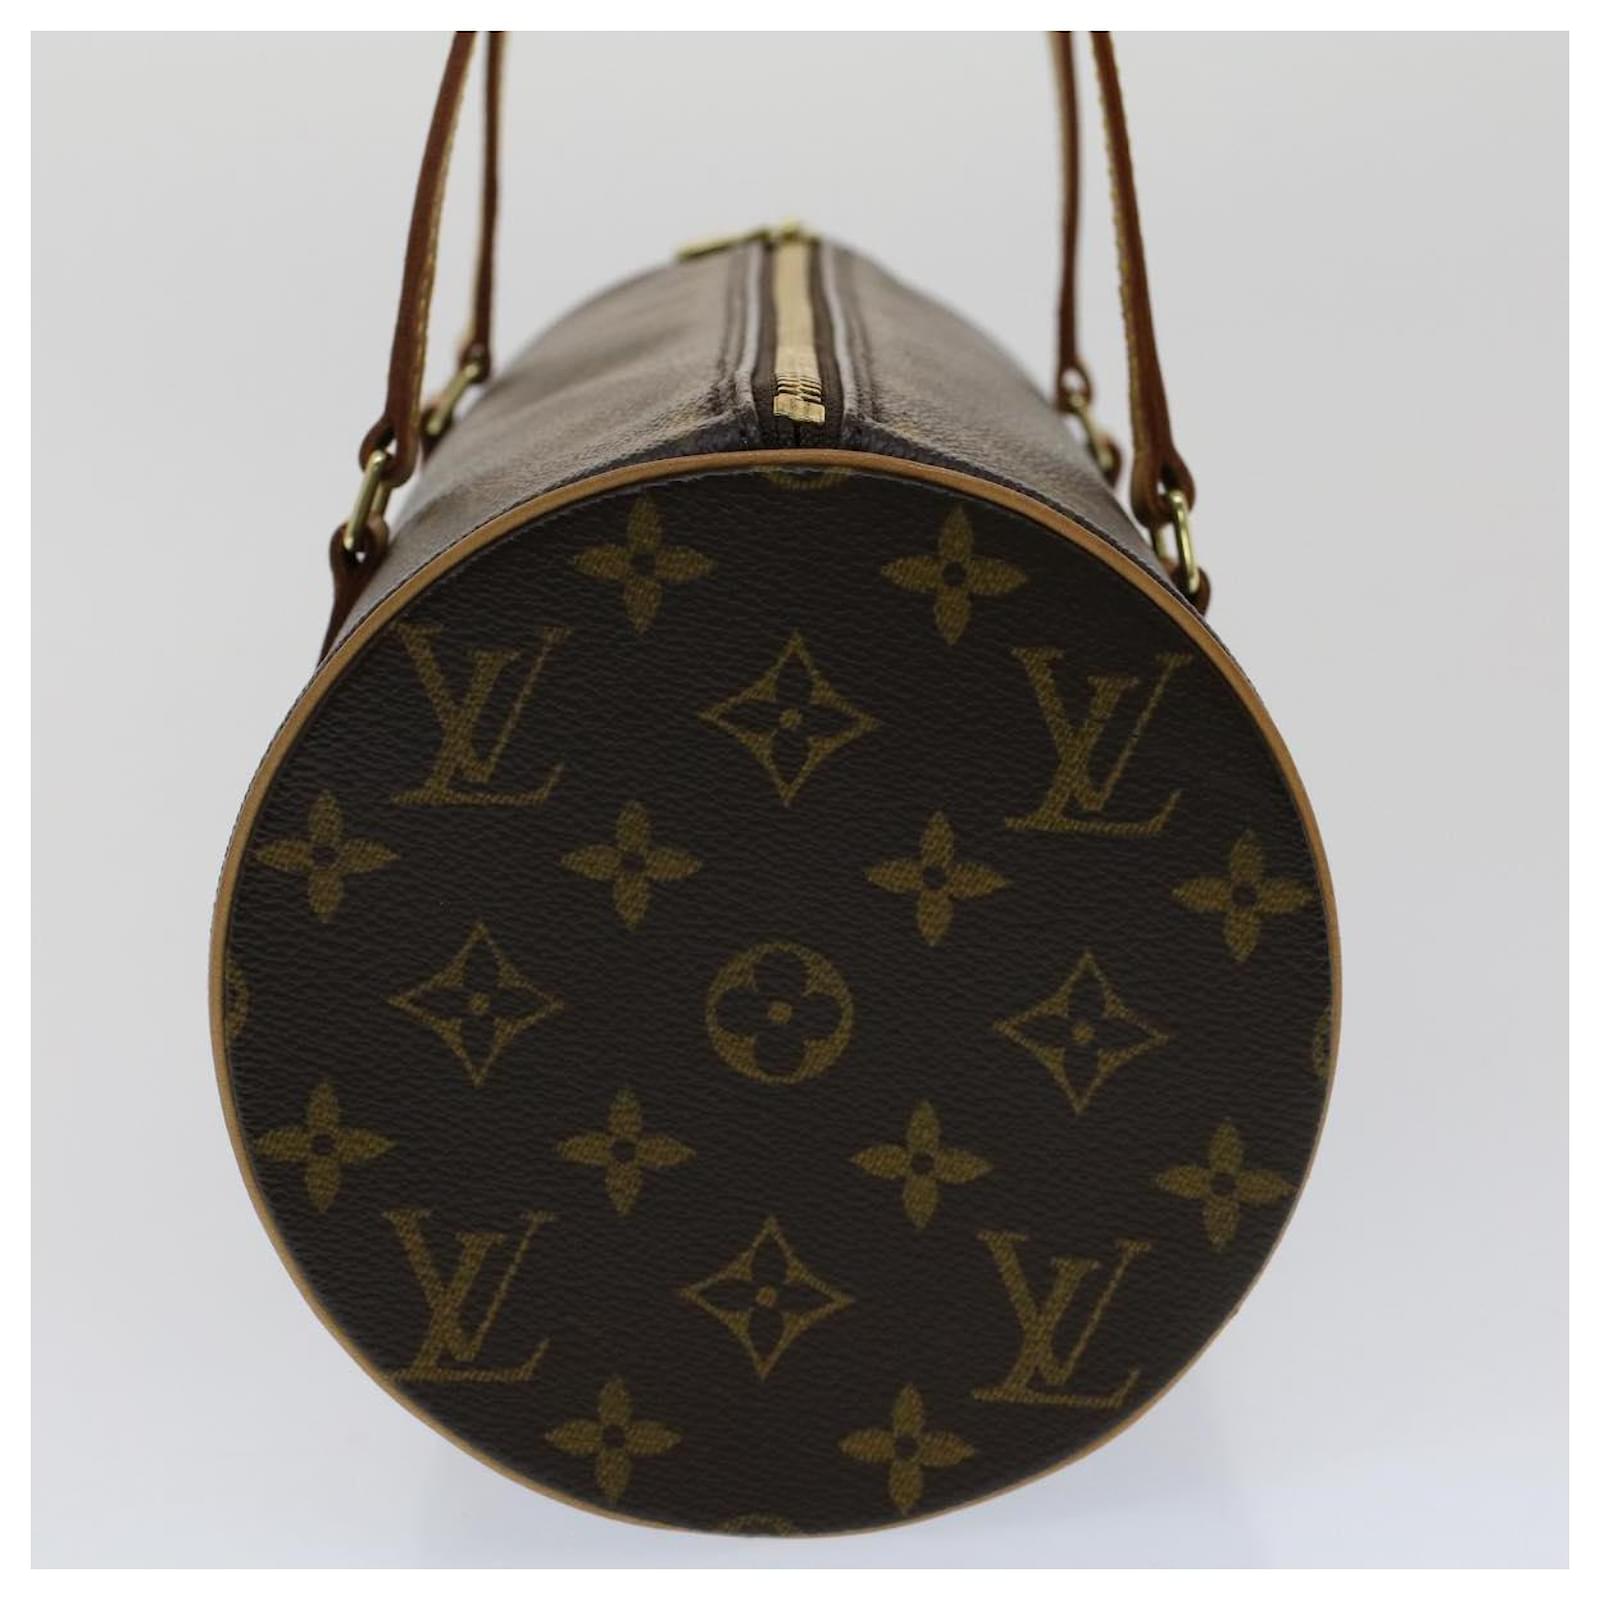 Louis Vuitton Papillon 30 No Pouch Women's Handbag M51385 Monogram